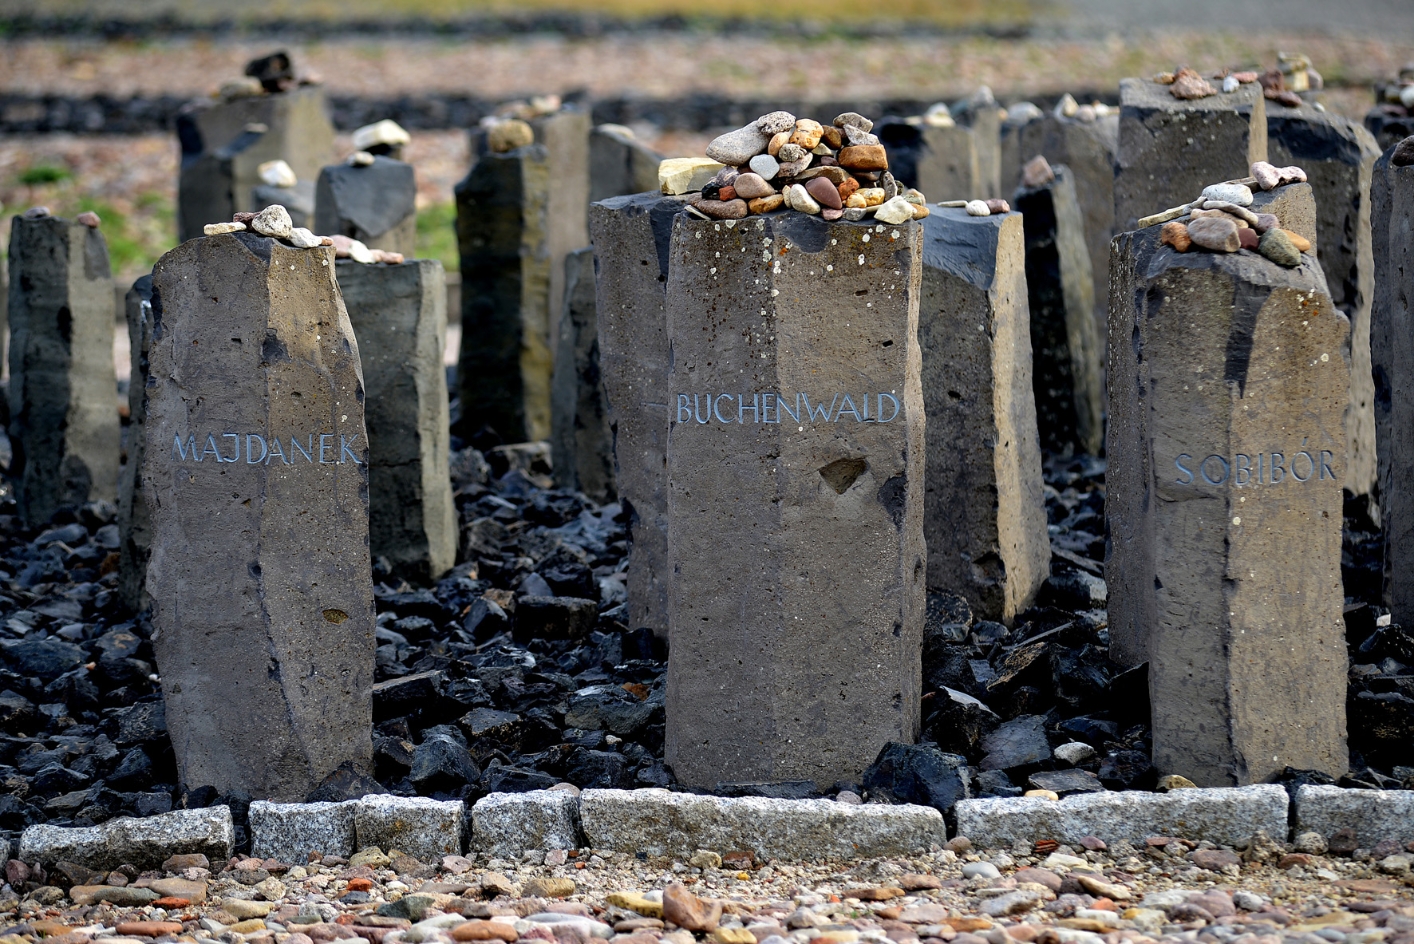 Säulenartig aufgestellte hüfthohe Steine in einem schwarzen Schlakesteinfeld. Auf die Steine wurden auf der Oberseite vereinzelt kleine Steinchen abgelegt. Die drei Steinsäulen im Fokus sind Graviert:. Links: "Majdanek", Mitte: "Buchenwald". Rechts:"Soribor".